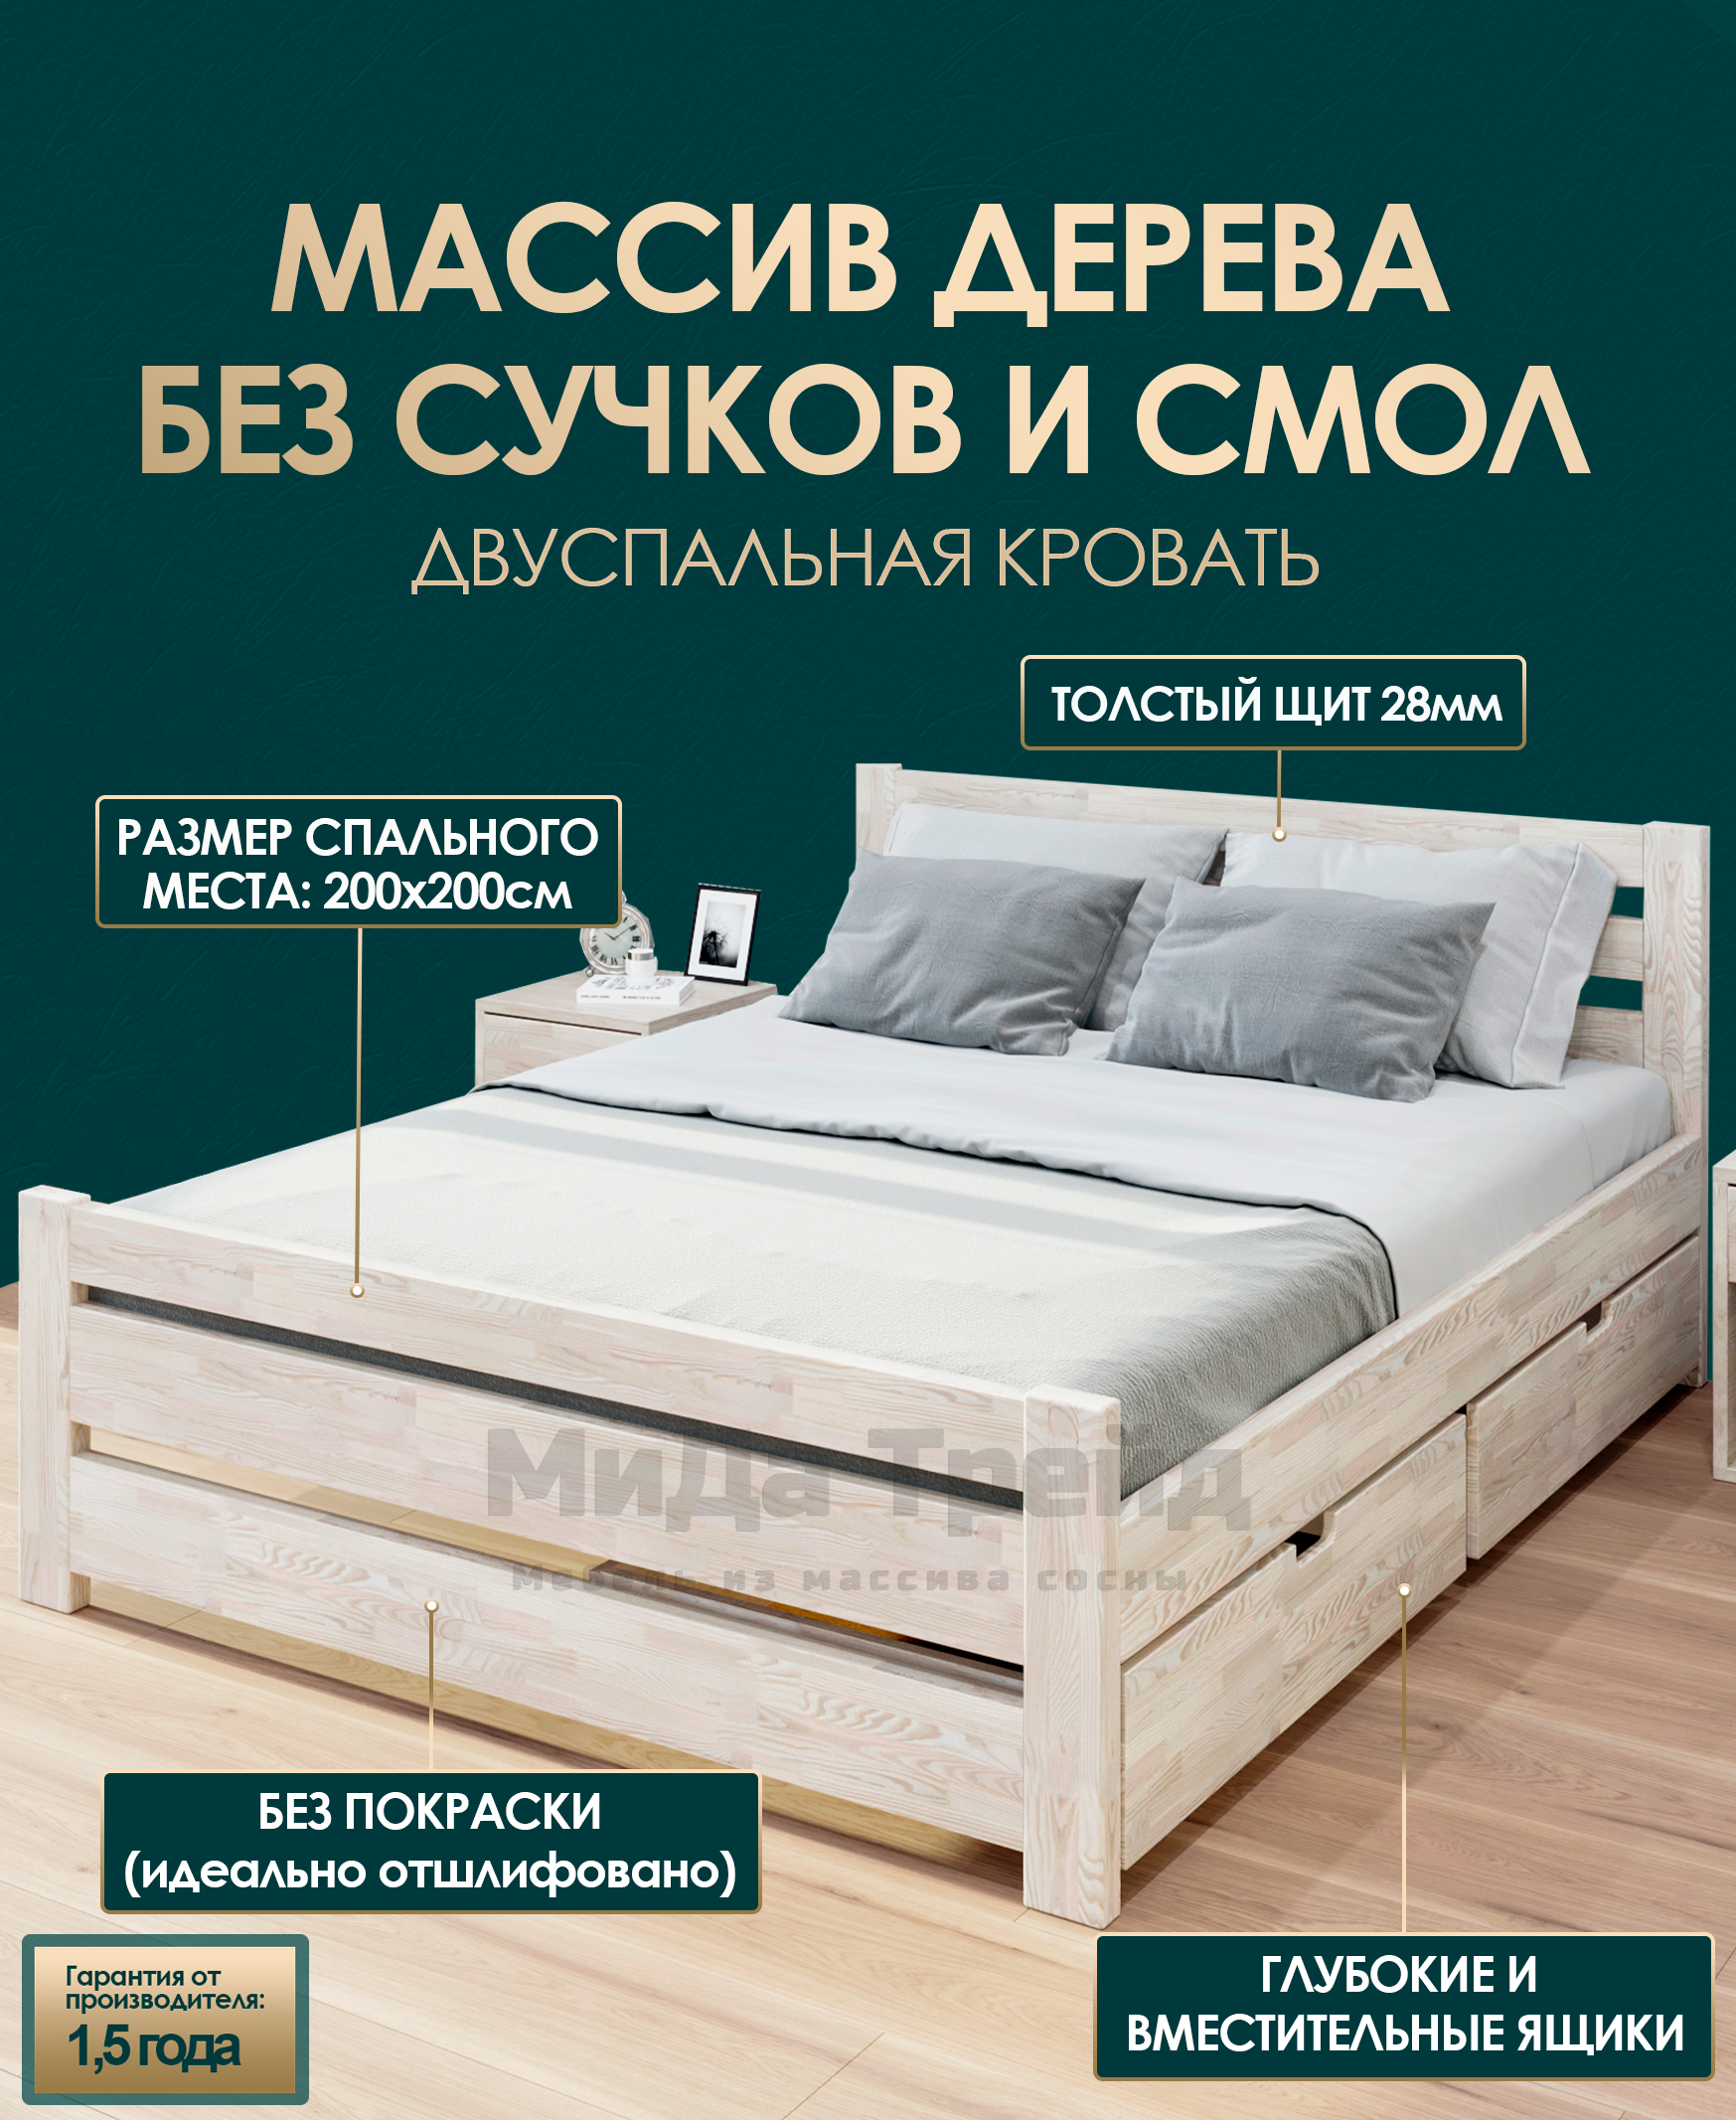 Деревянные кровати - качество от изготовителя мебели Klen